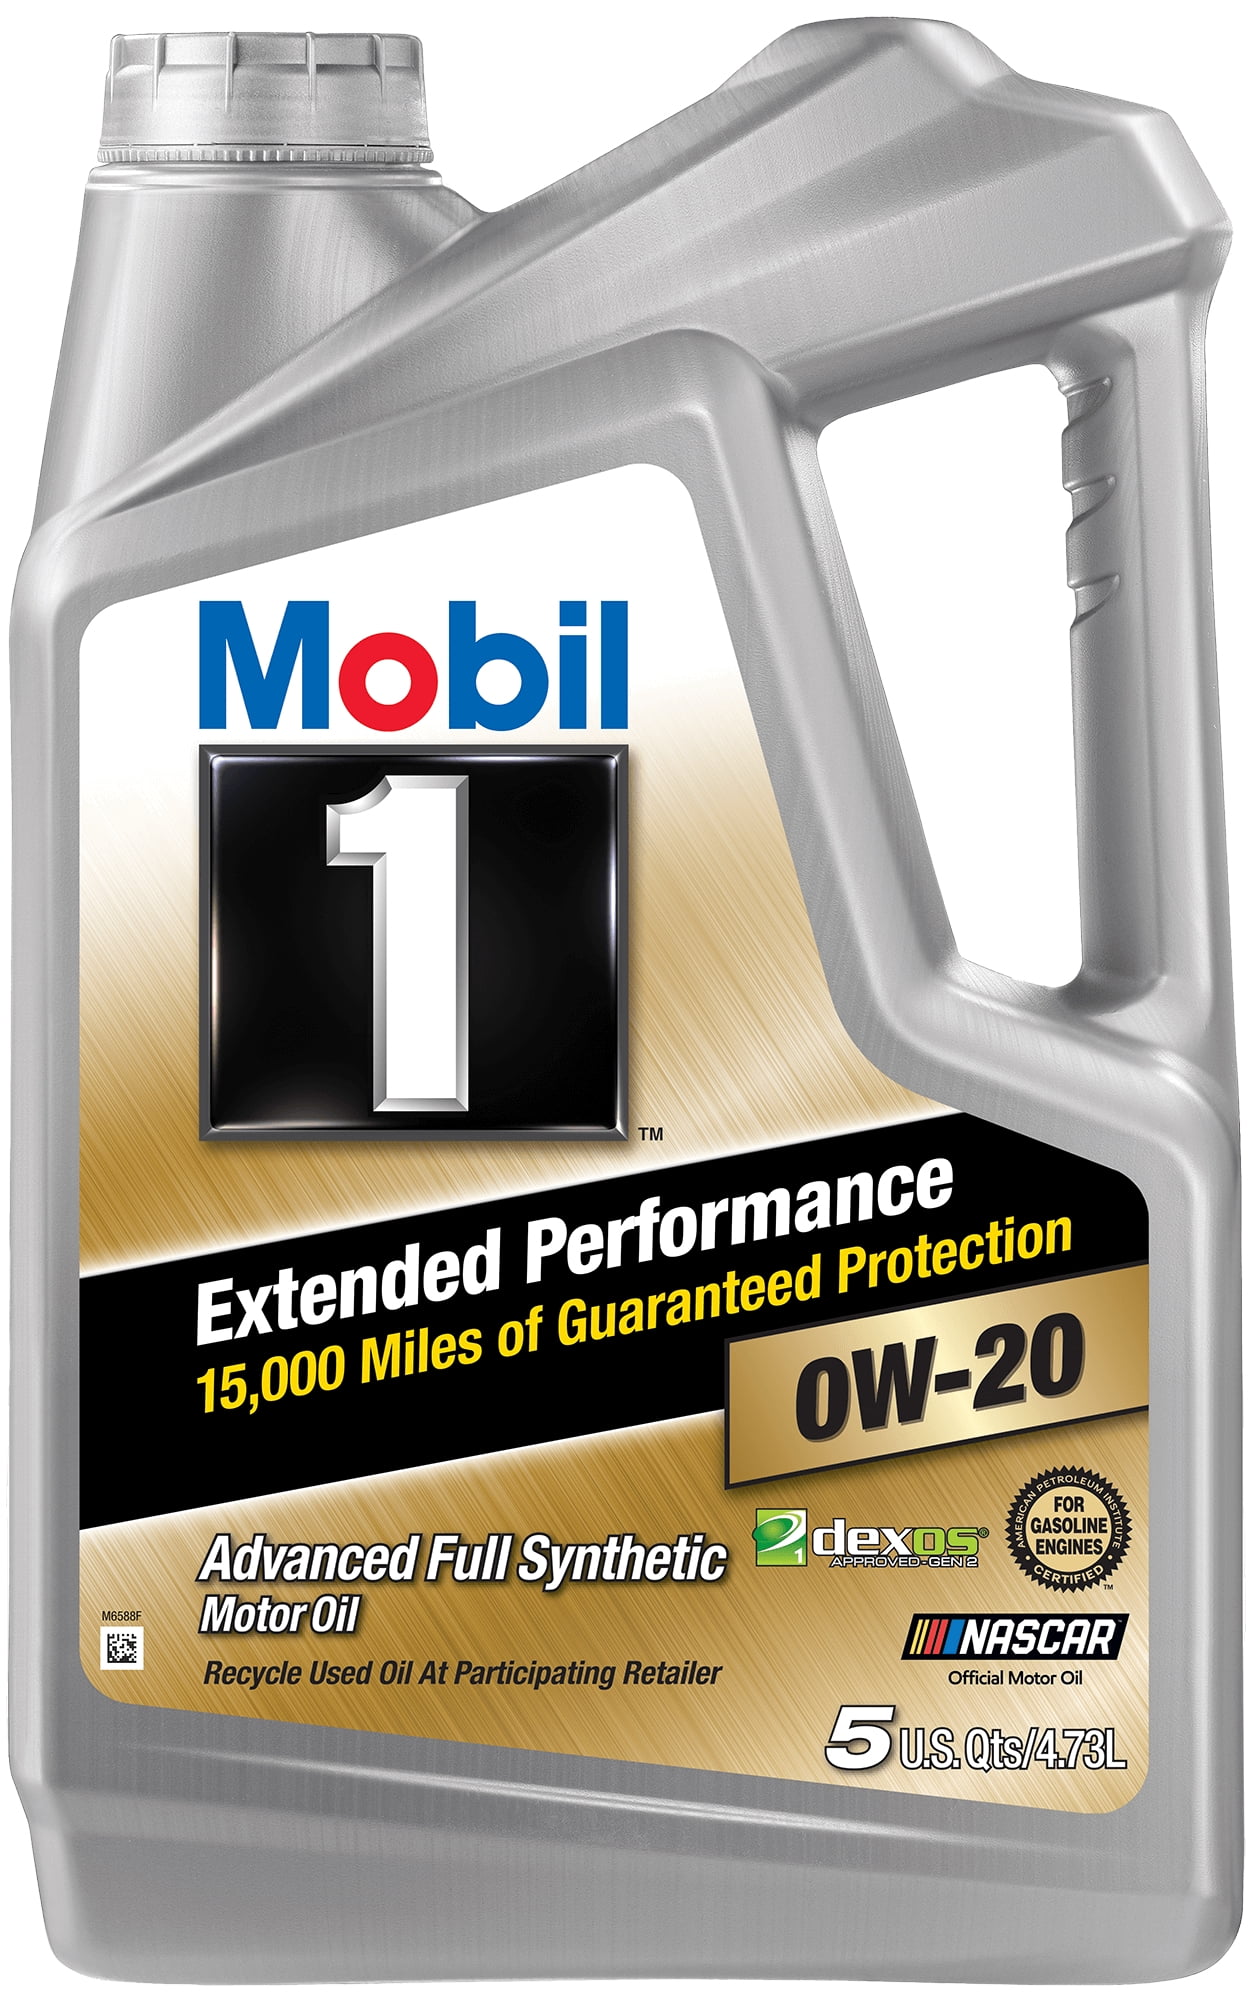 mobil-1-extended-performance-full-synthetic-motor-oil-0w-20-5-quart